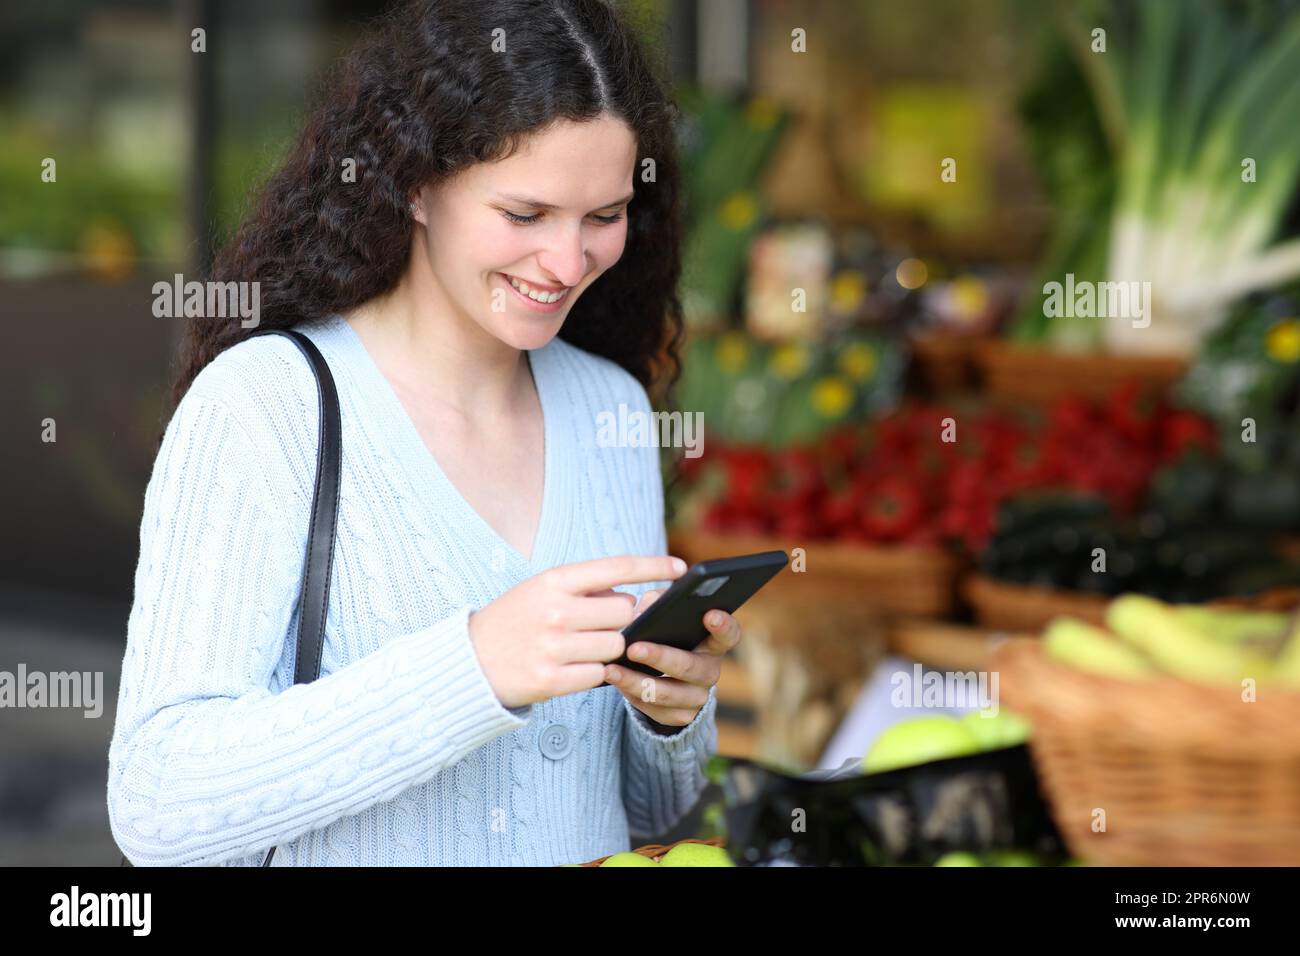 Kunde verwendet Smartphone in einem Gemüsehändler Stockfoto